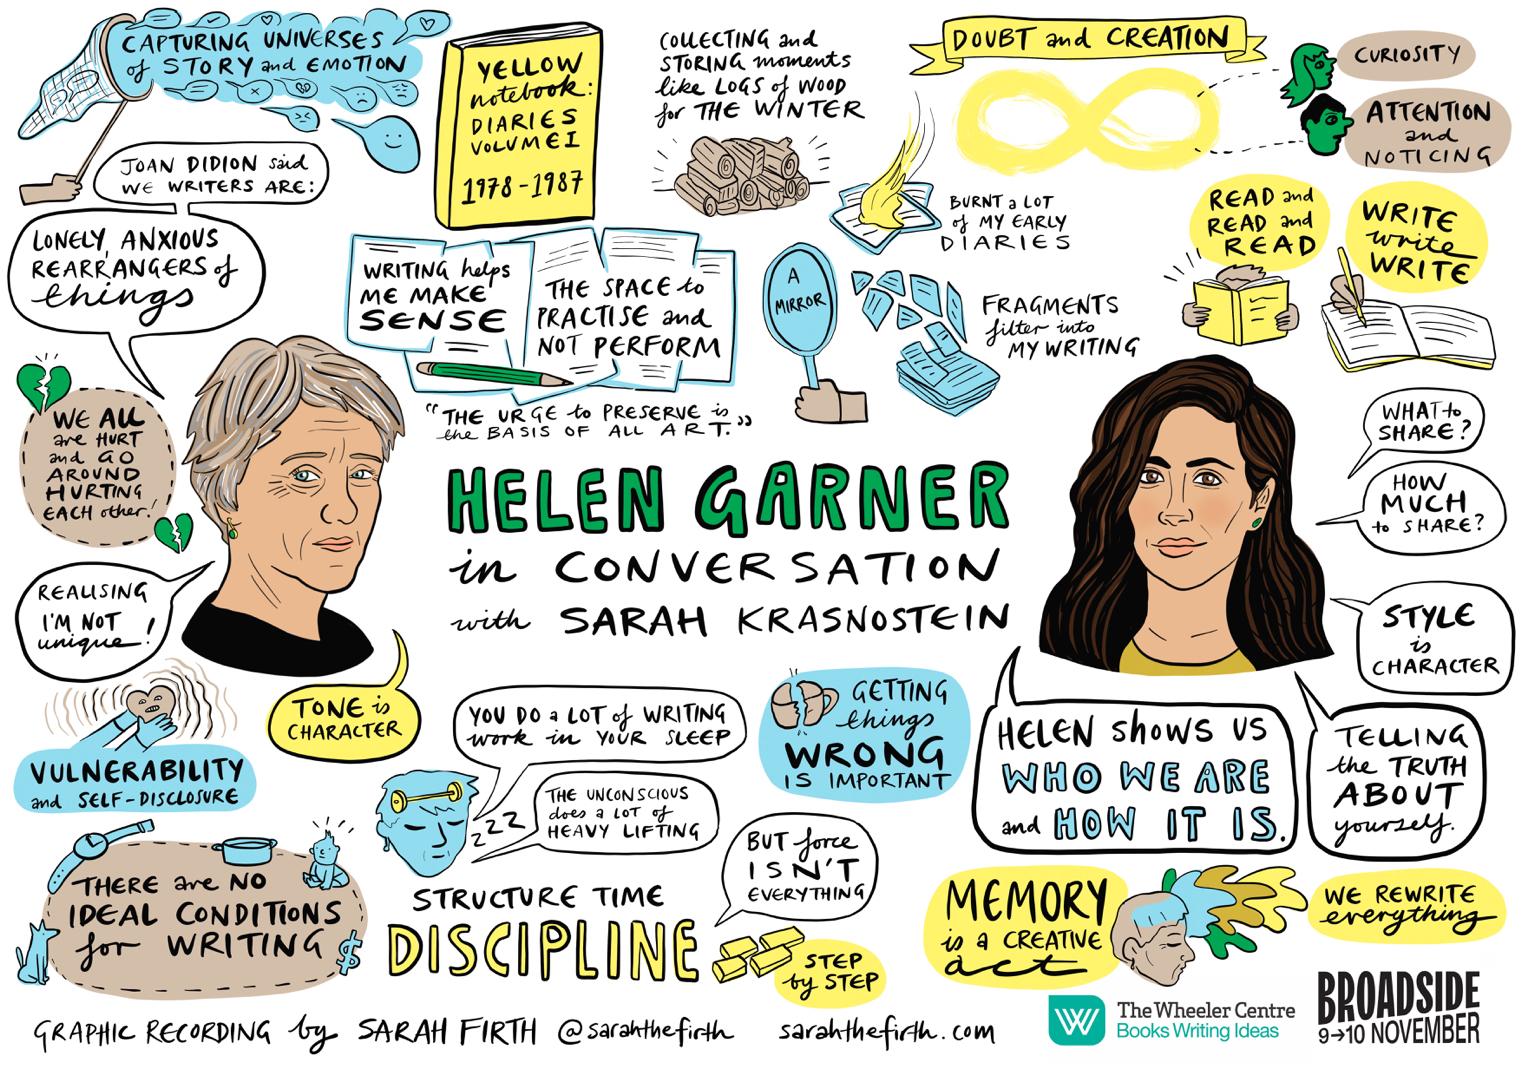 graphic recording of Helen Garner in conversation with Sarah Krasnostein